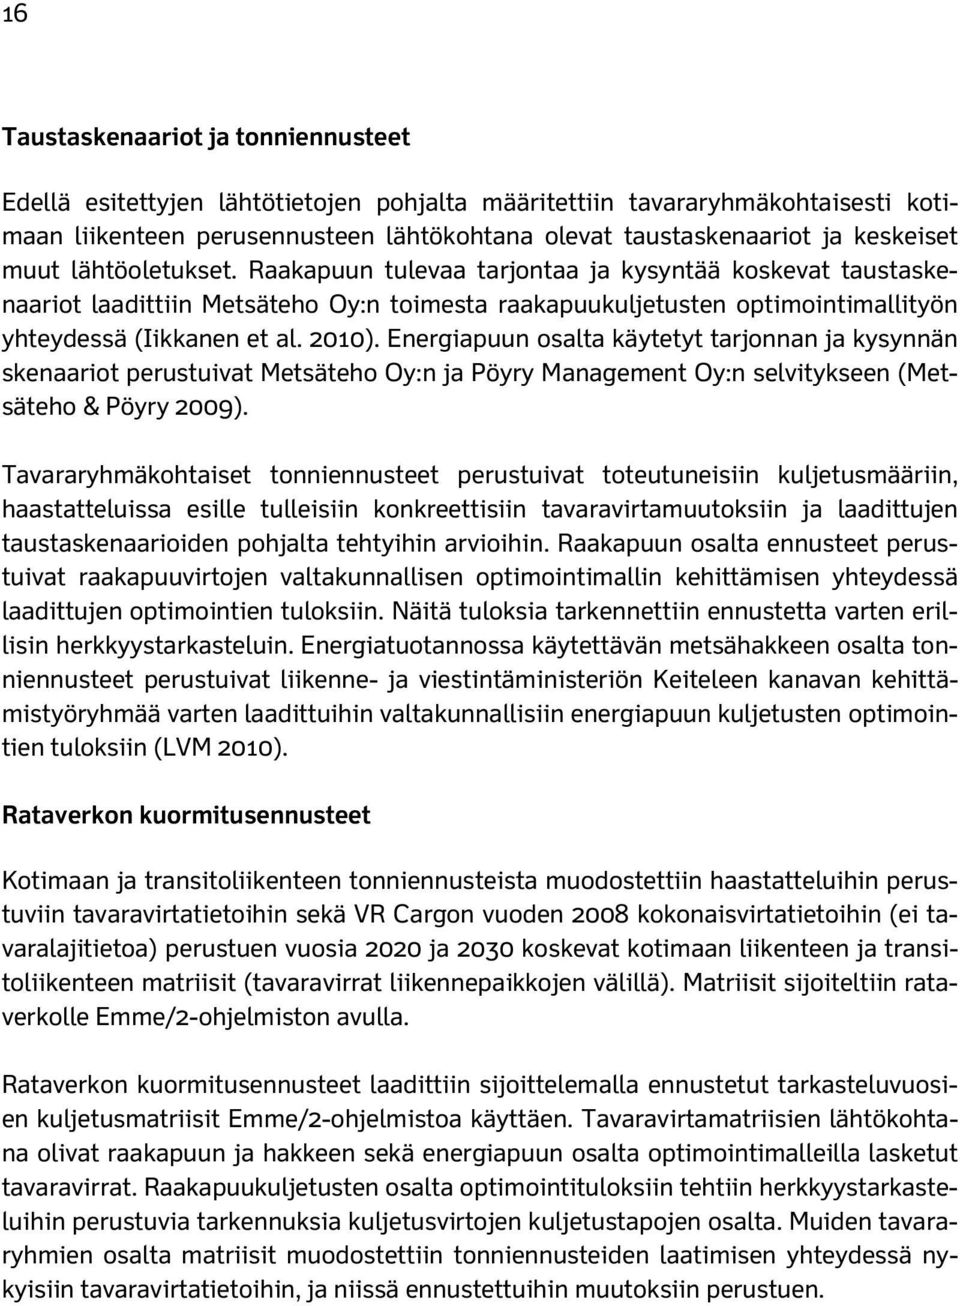 2010). Energiapuun osalta käytetyt tarjonnan ja kysynnän skenaariot perustuivat Metsäteho Oy:n ja Pöyry Management Oy:n selvitykseen (Metsäteho & Pöyry 2009).